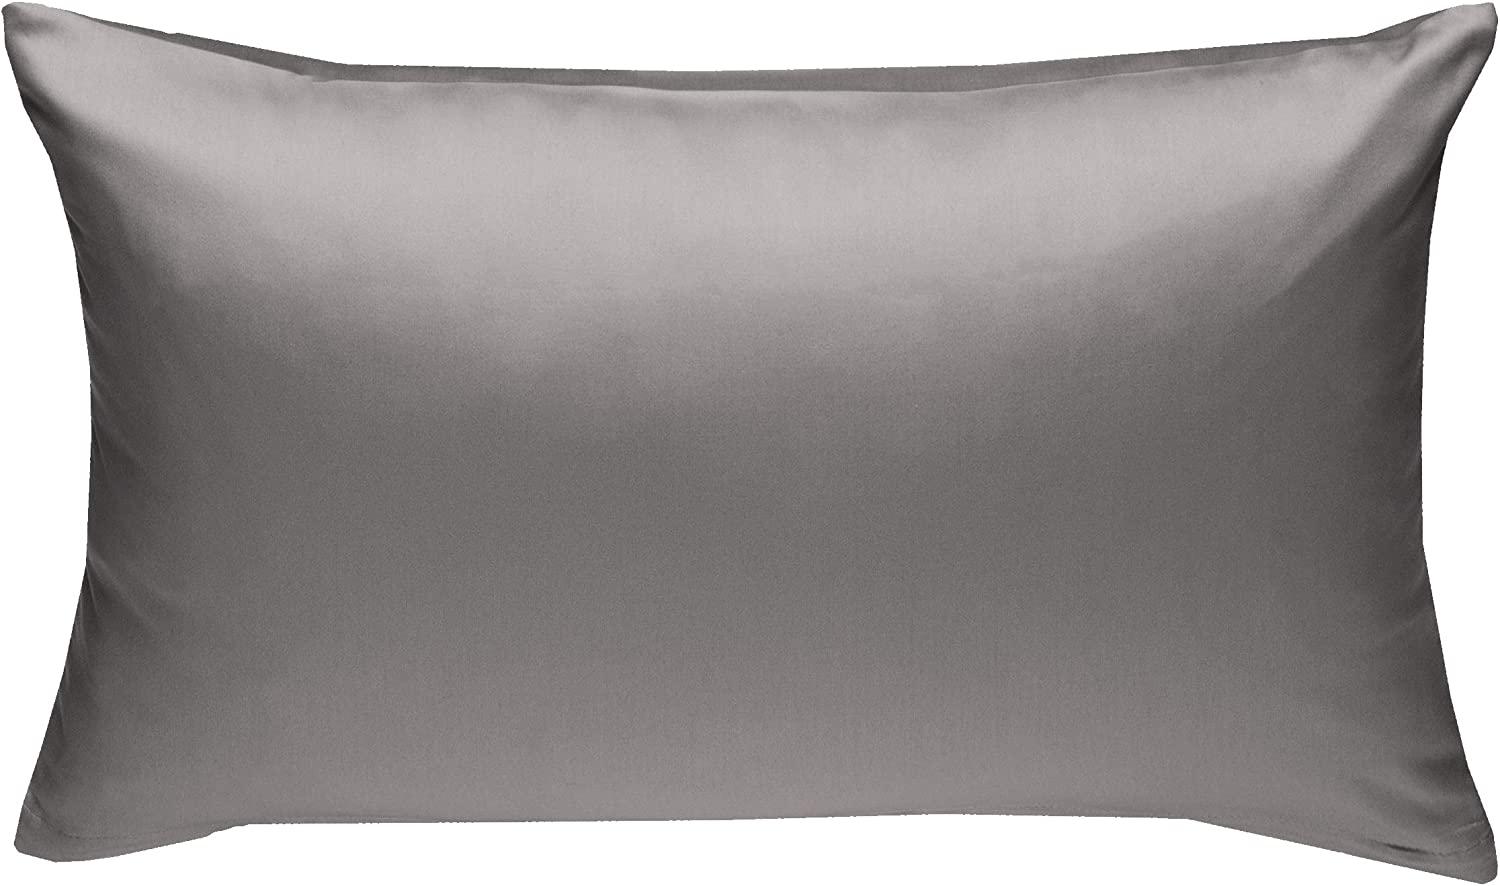 Bettwaesche-mit-Stil Mako-Satin / Baumwollsatin Bettwäsche uni / einfarbig anthrazit Kissenbezug 40x60 cm Bild 1